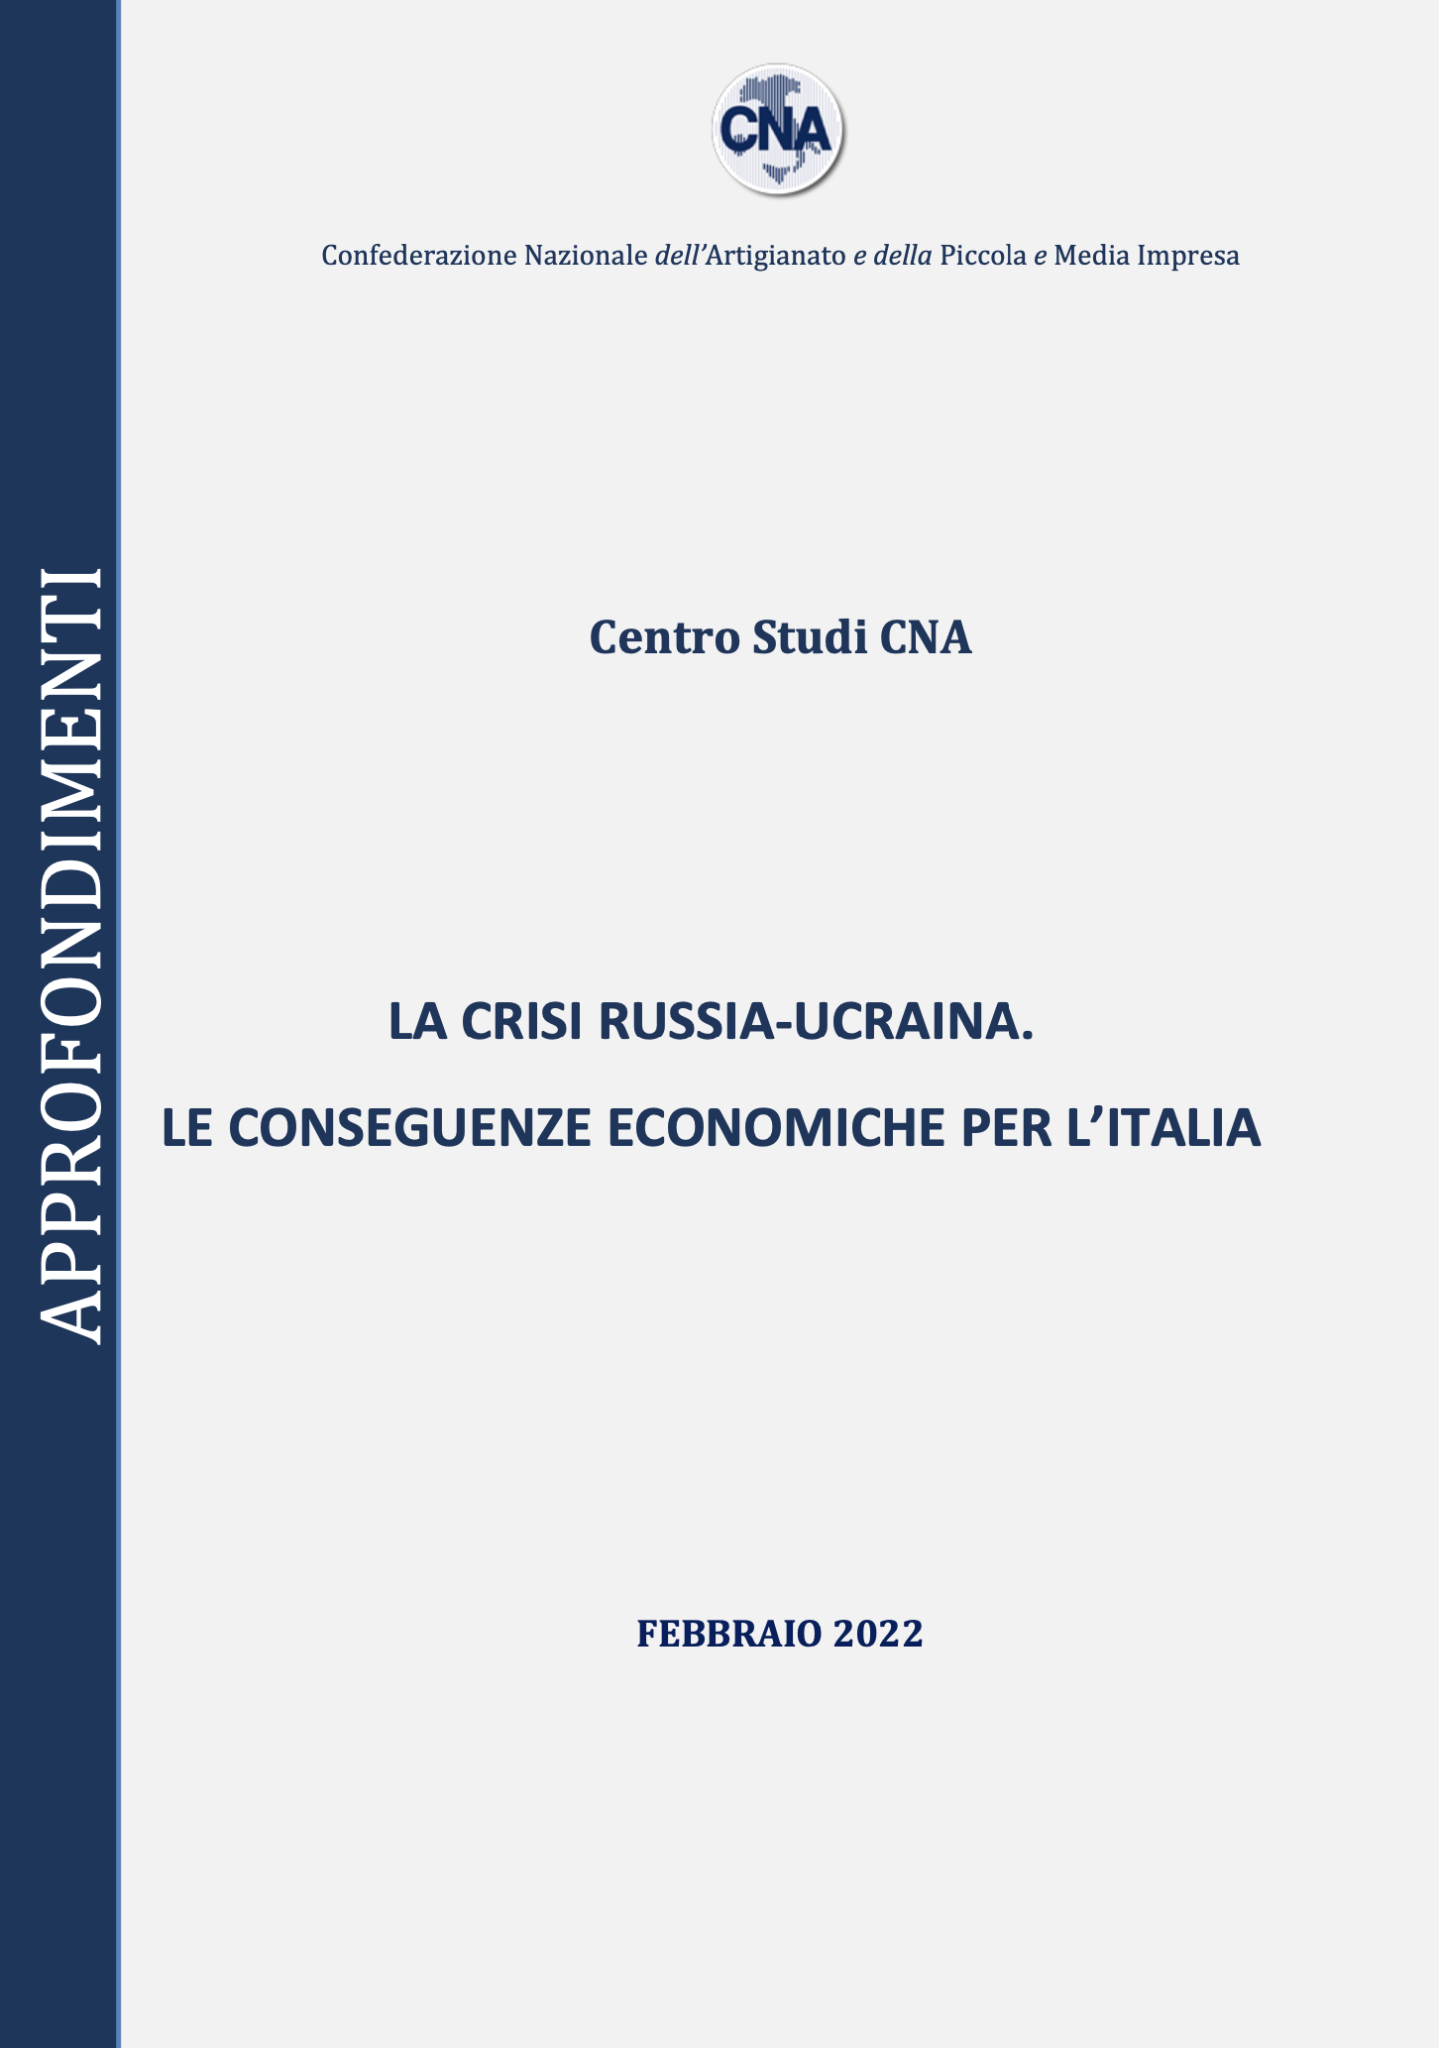 La crisi Russia-Ucraina. Le conseguenze economiche per l’Italia